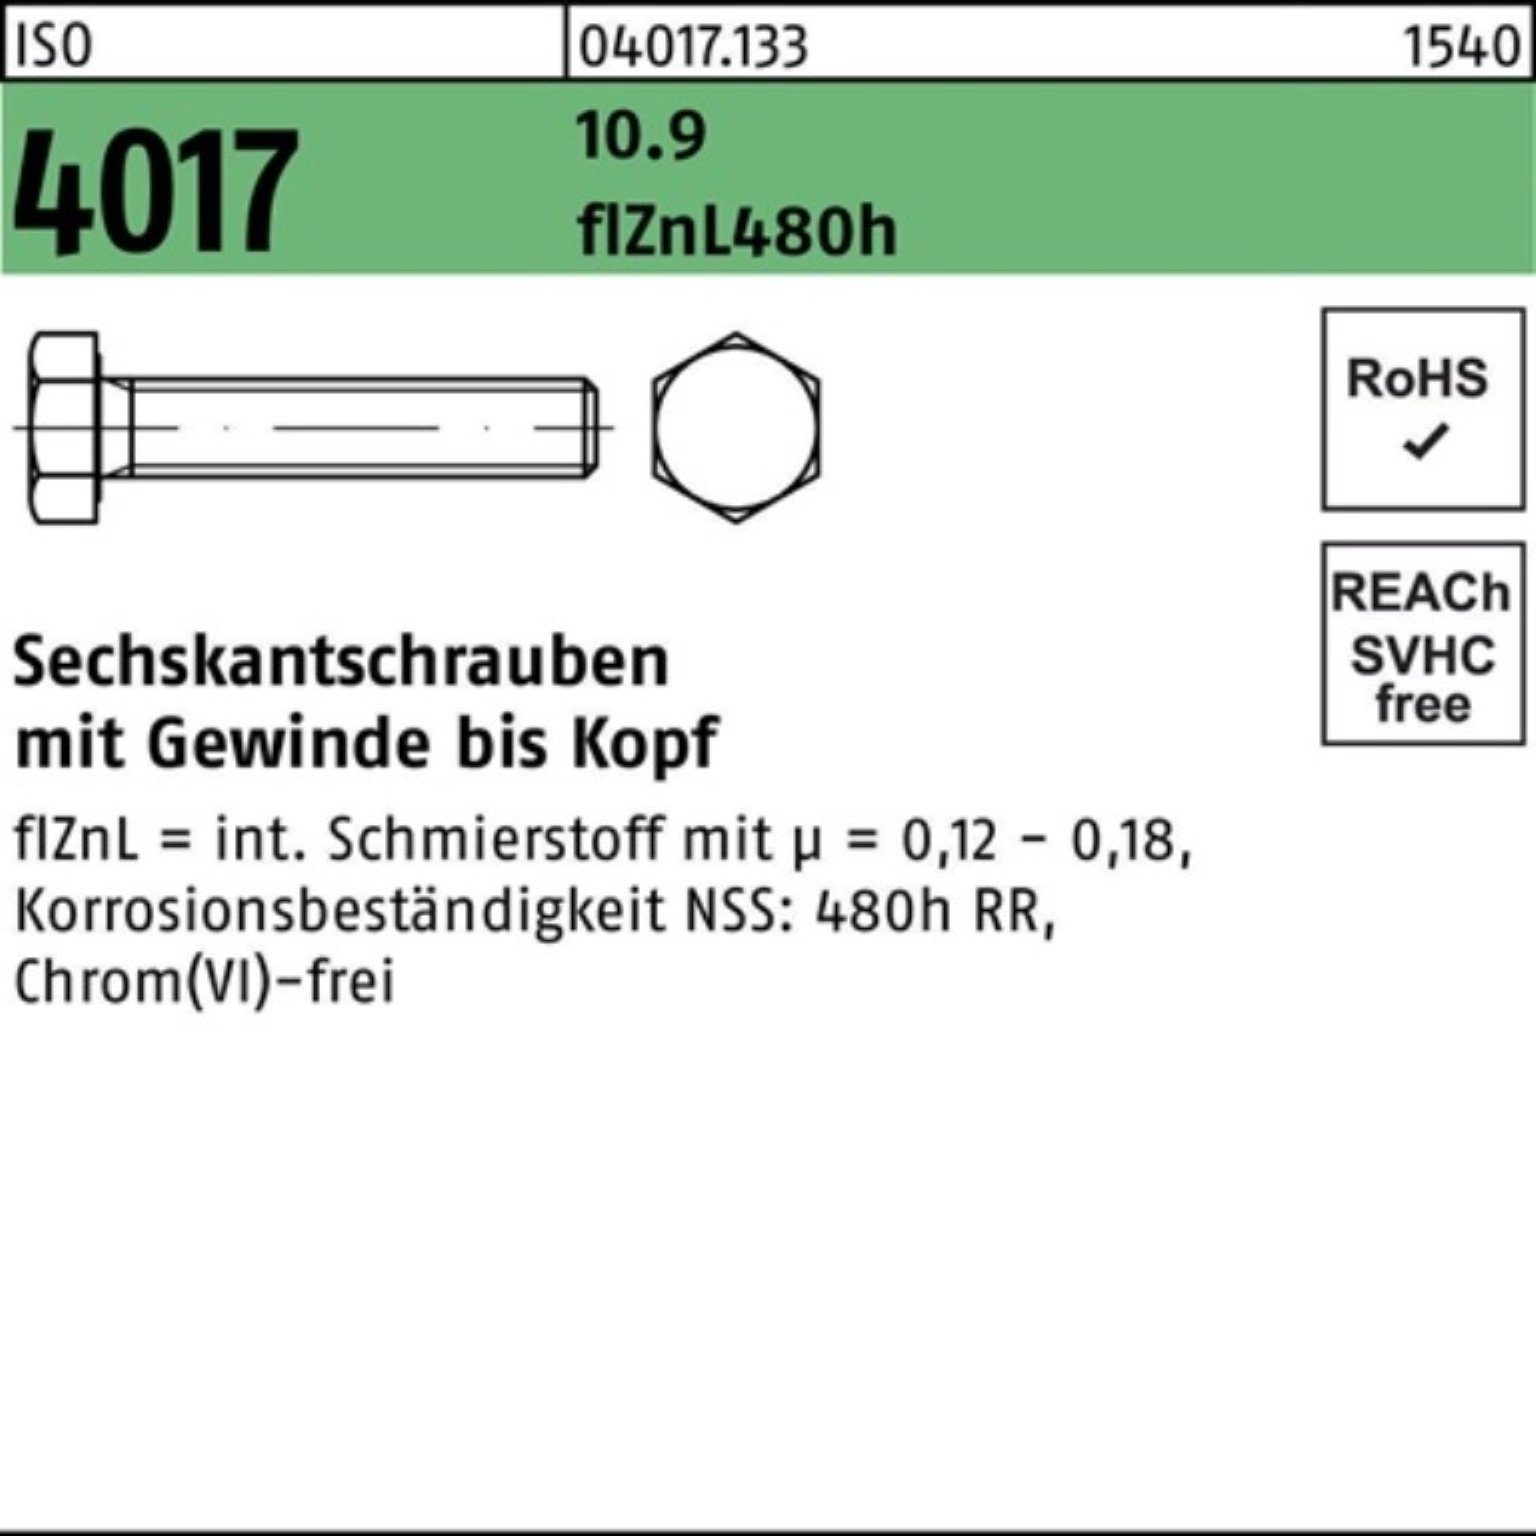 VG Bufab Sechskantschraube 50 Pack Sechskantschraube 10.9 zinklamellenb. 4017 100er M16x ISO 5